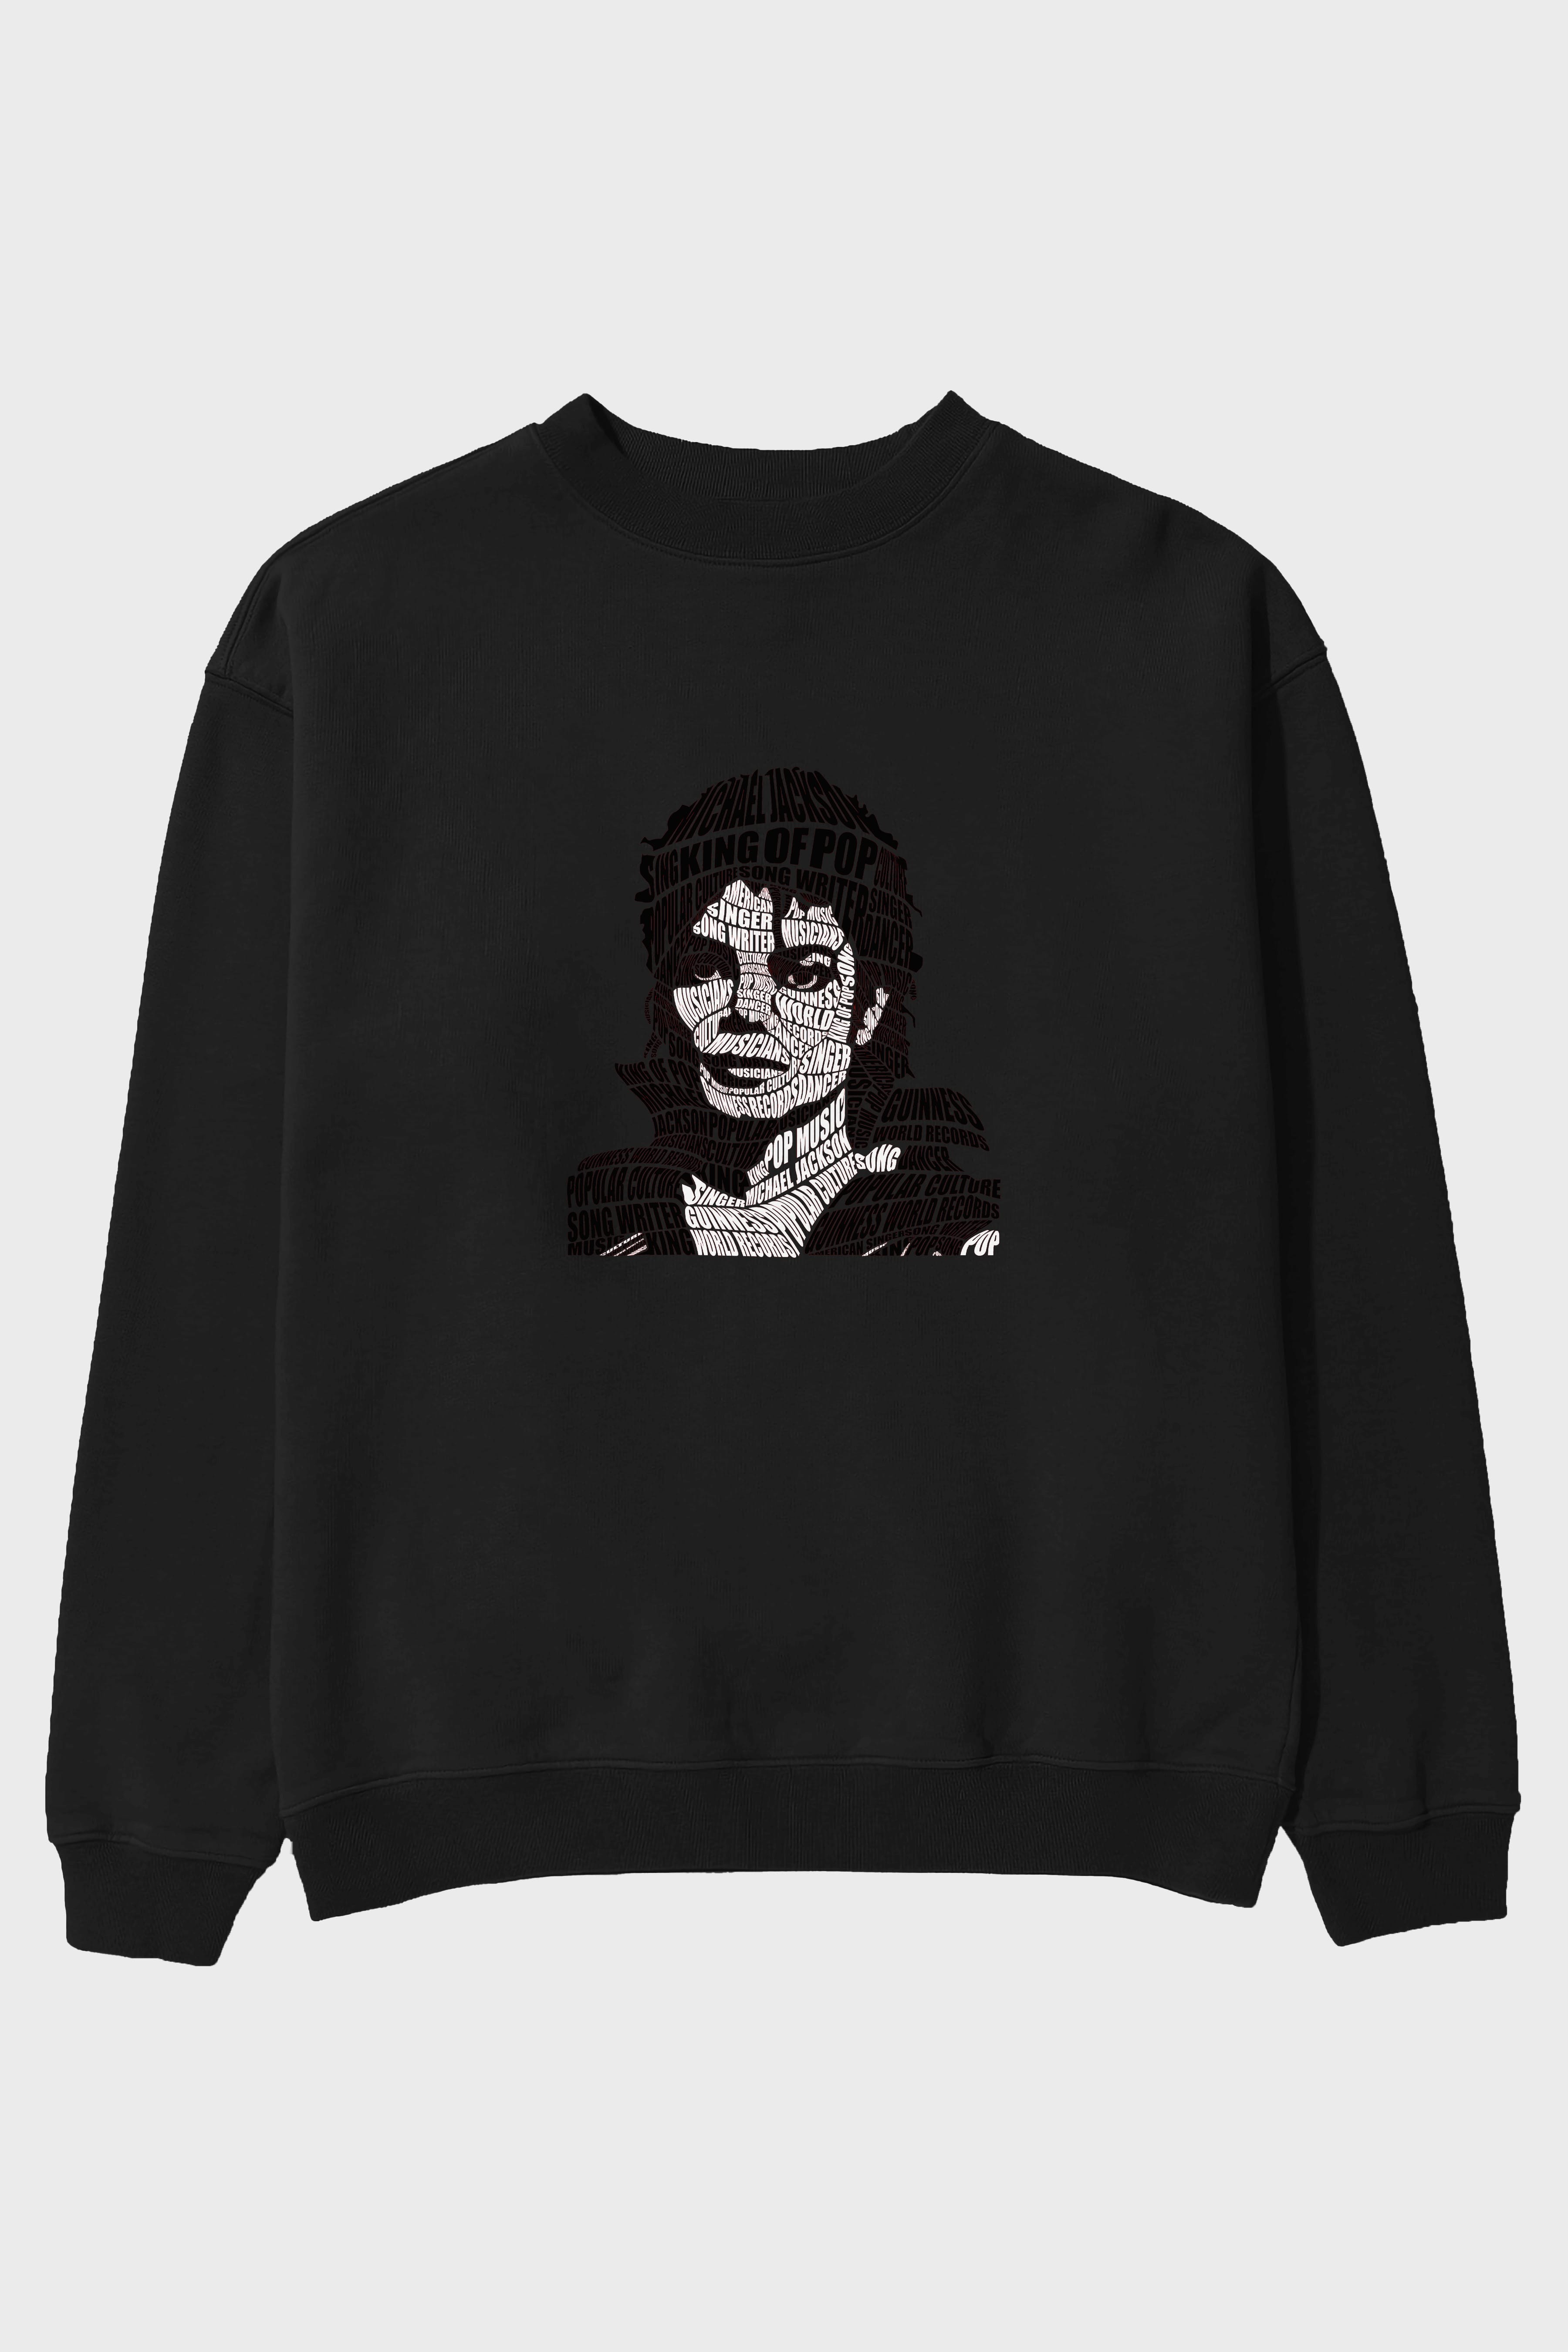 Michael Jackson Calligram Ön Baskılı Oversize Sweatshirt Erkek Kadın Unisex